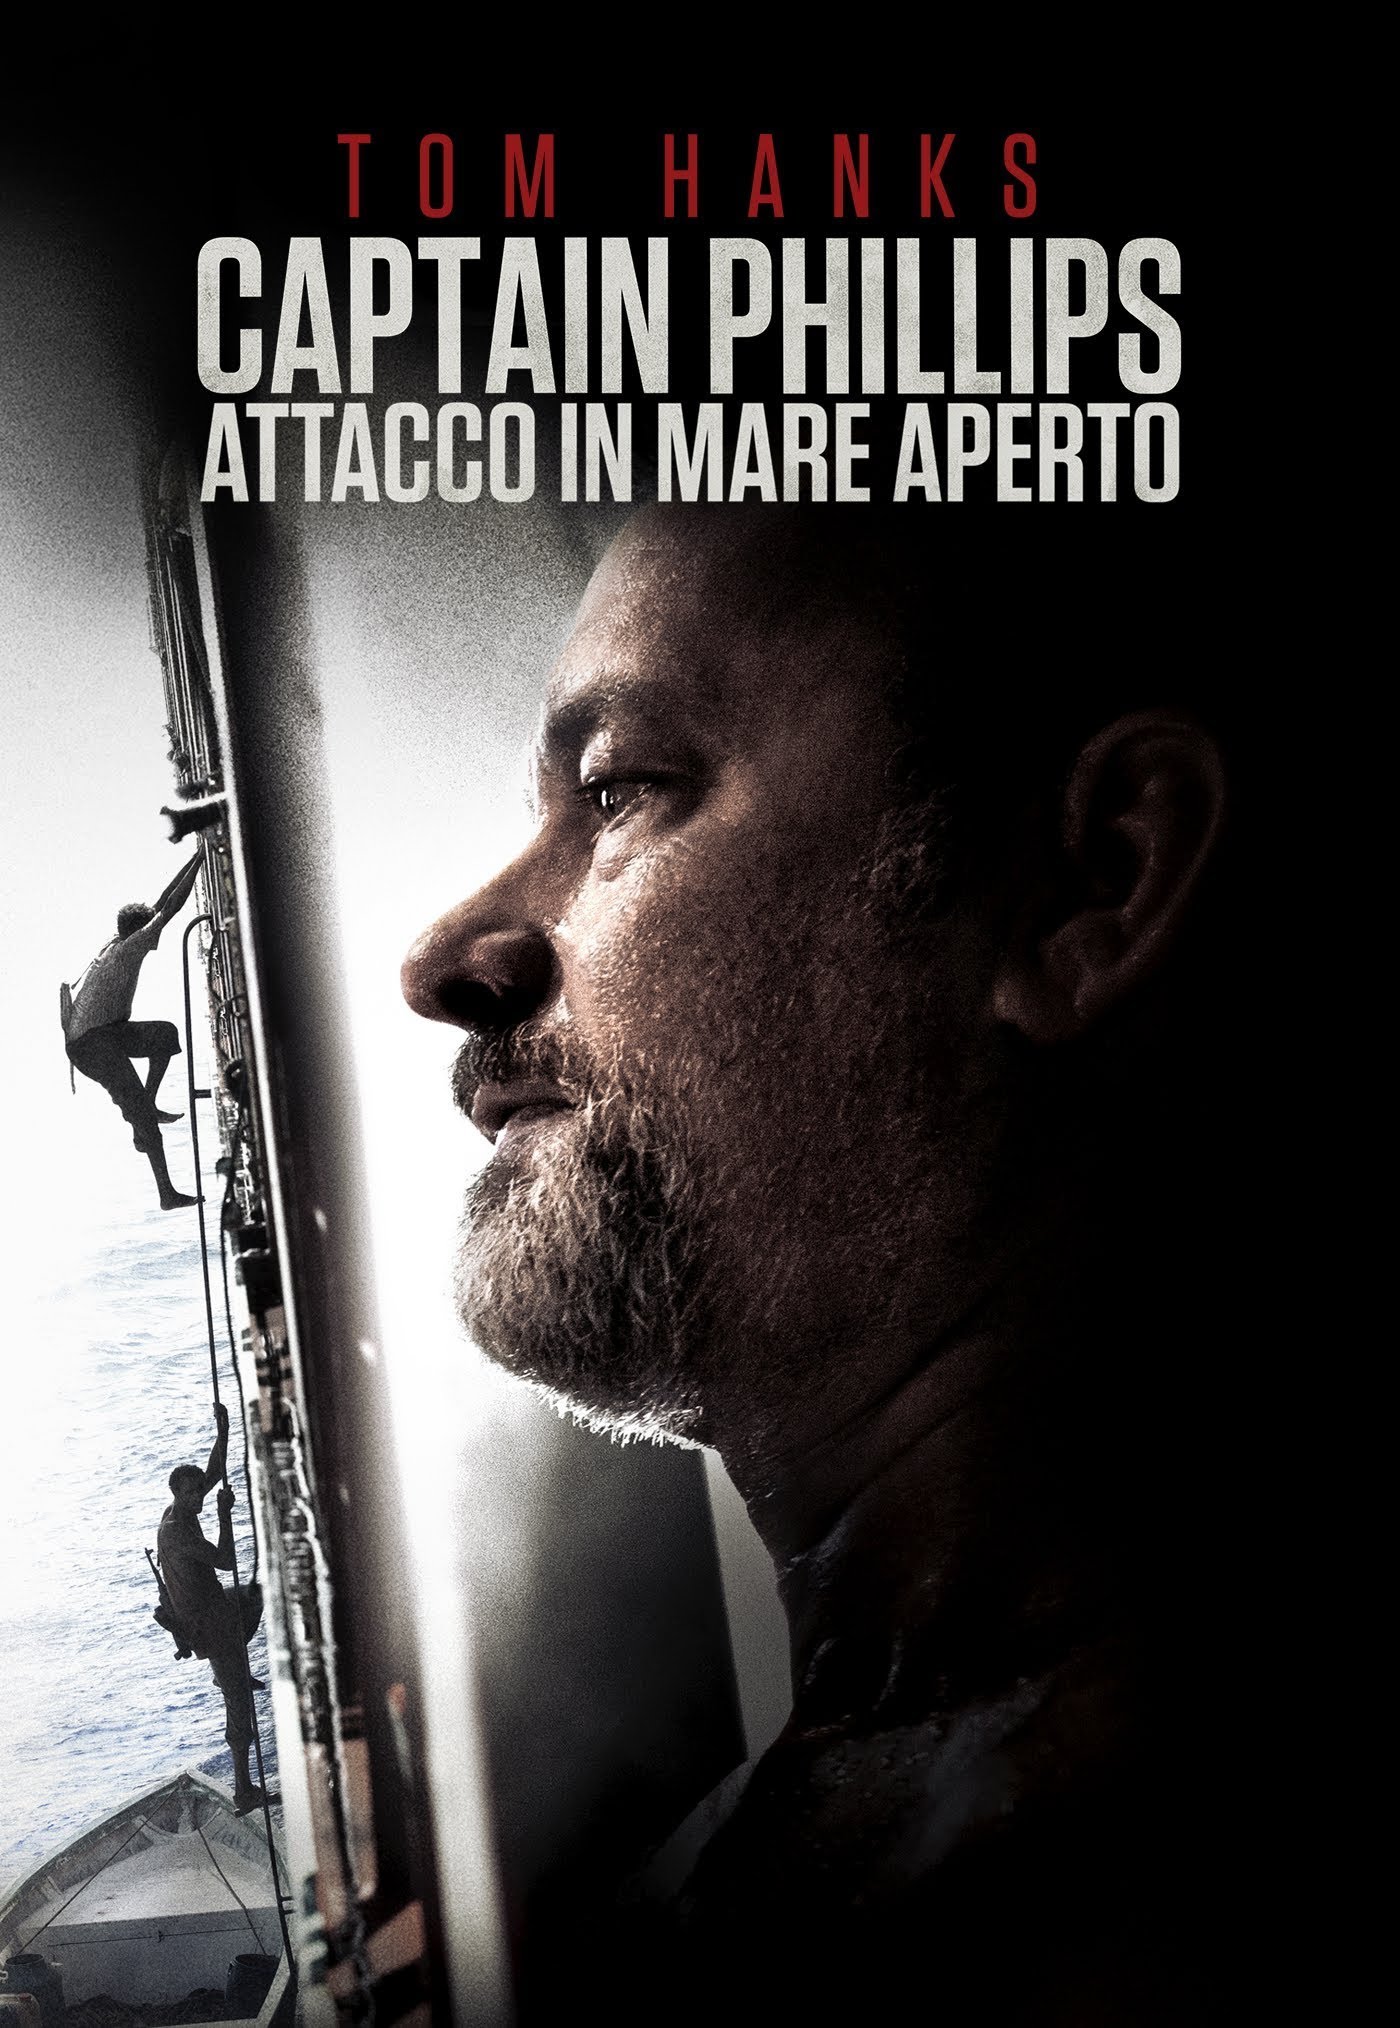 Captain Phillips – Attacco in mare aperto [HD] (2013)